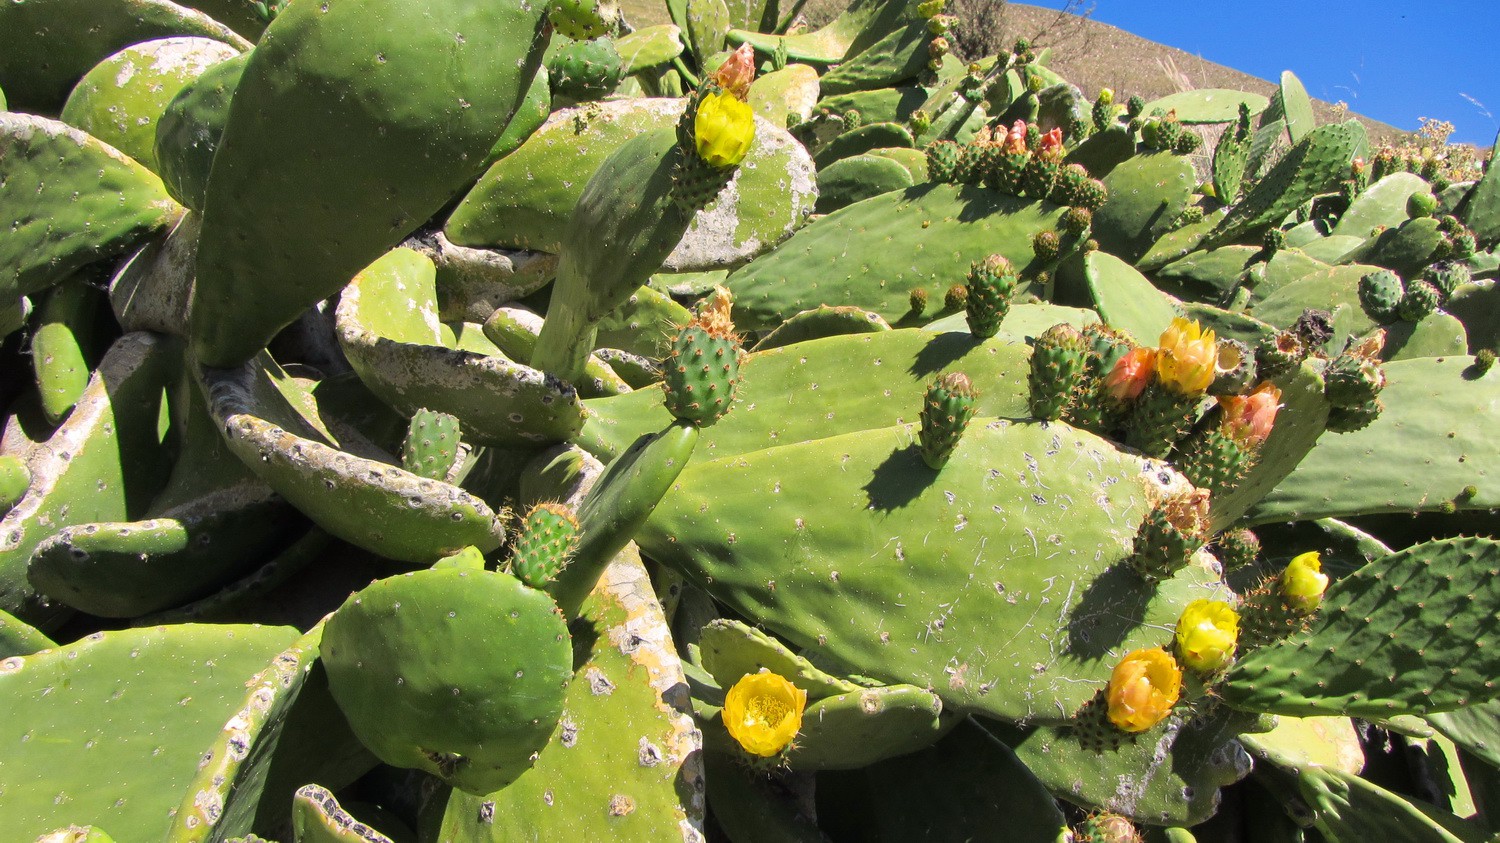 Cactuses in full blossom